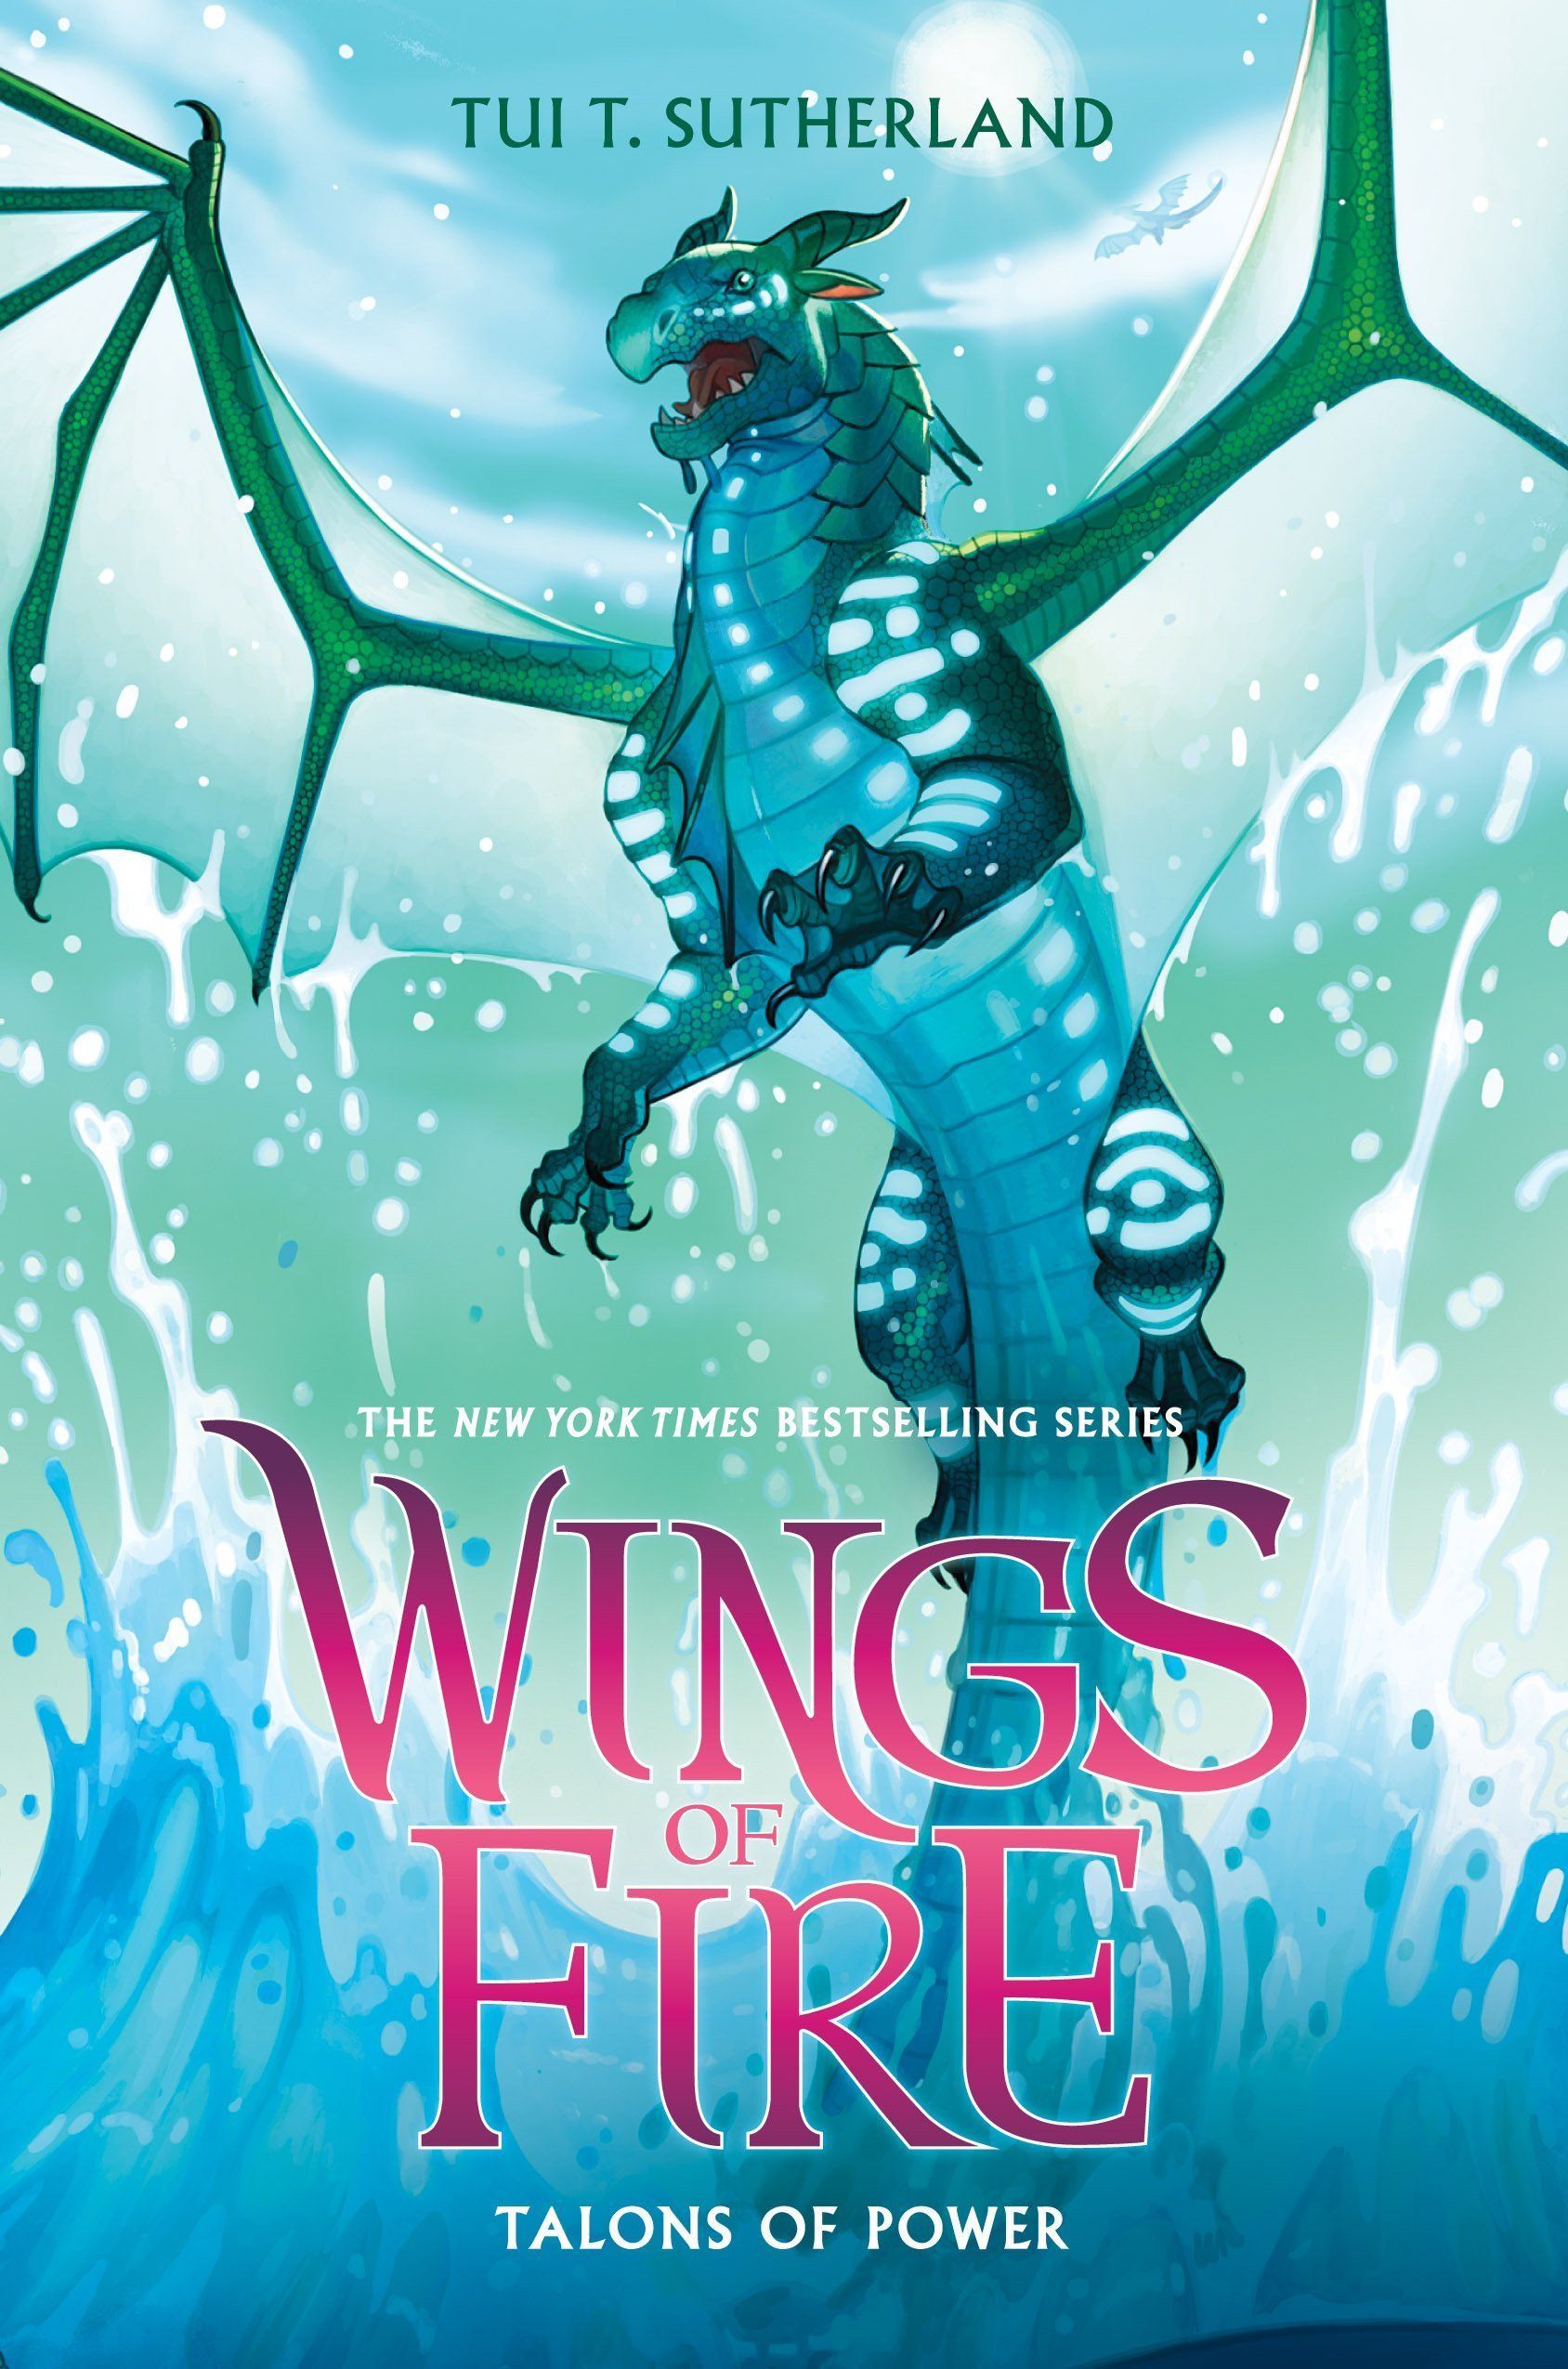 Wings of fire background ideas. wings of fire, fire book, wings